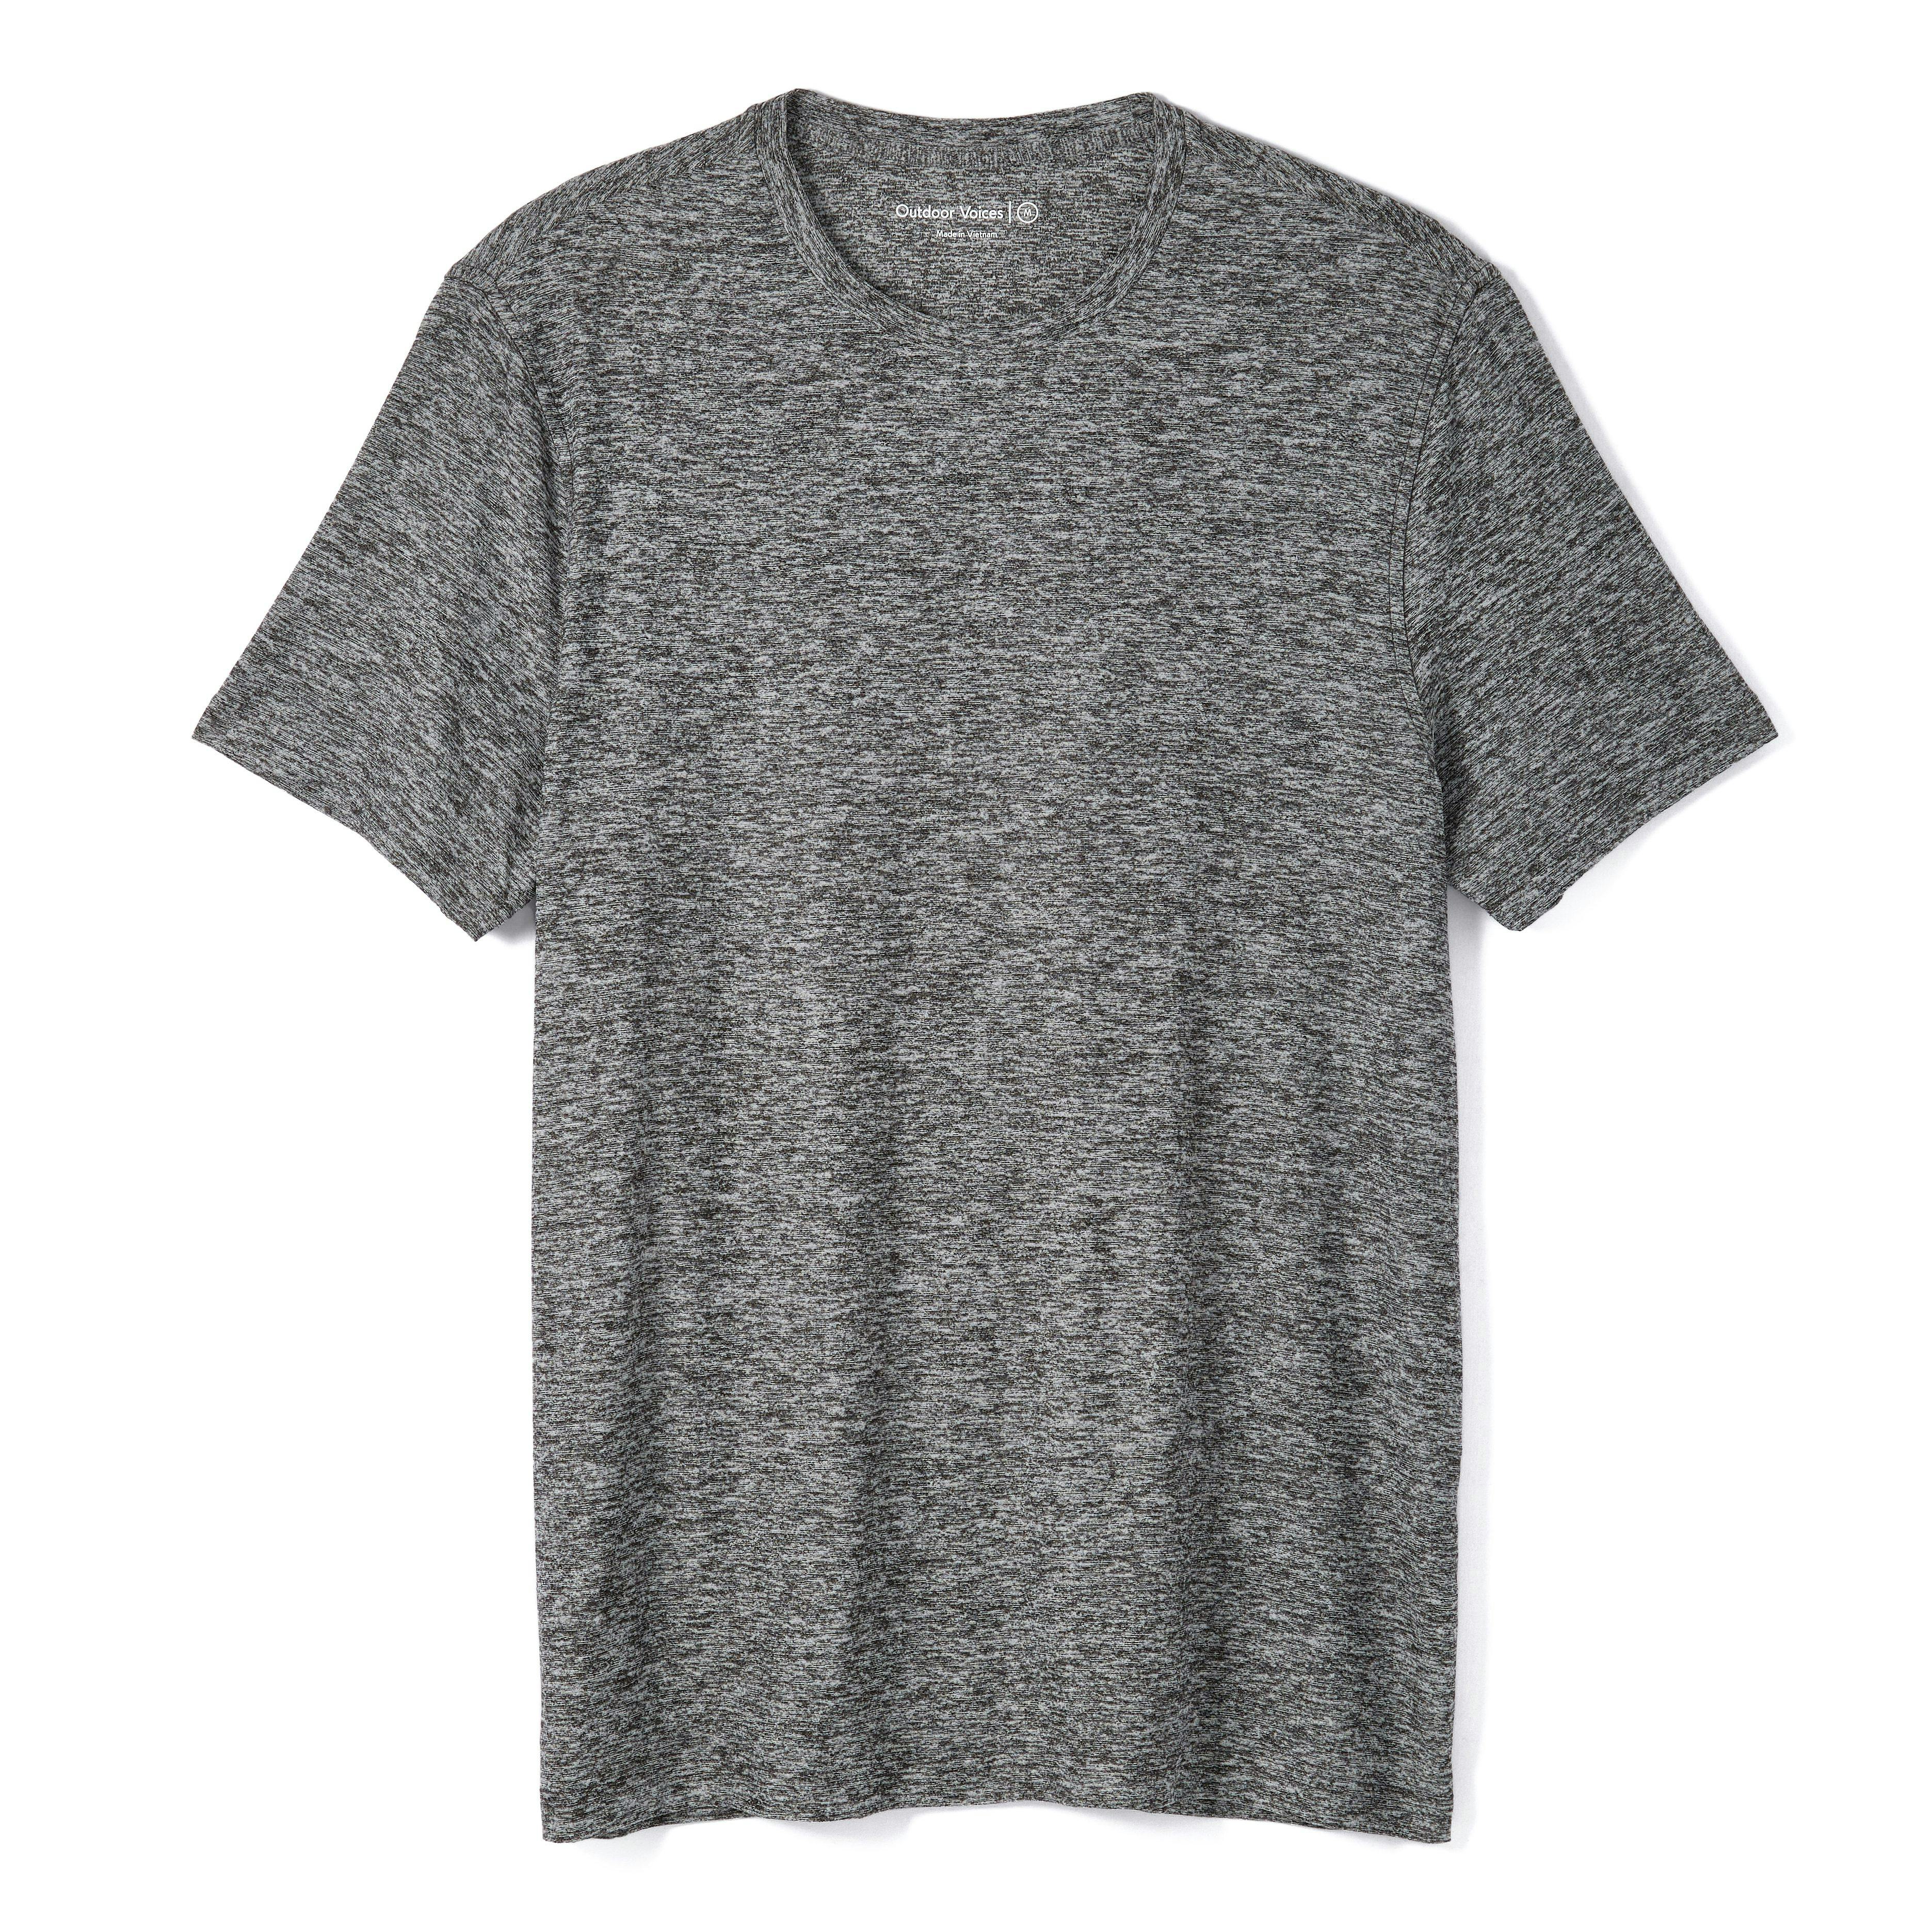 Cloud Weave Shirt, Men's Shirts